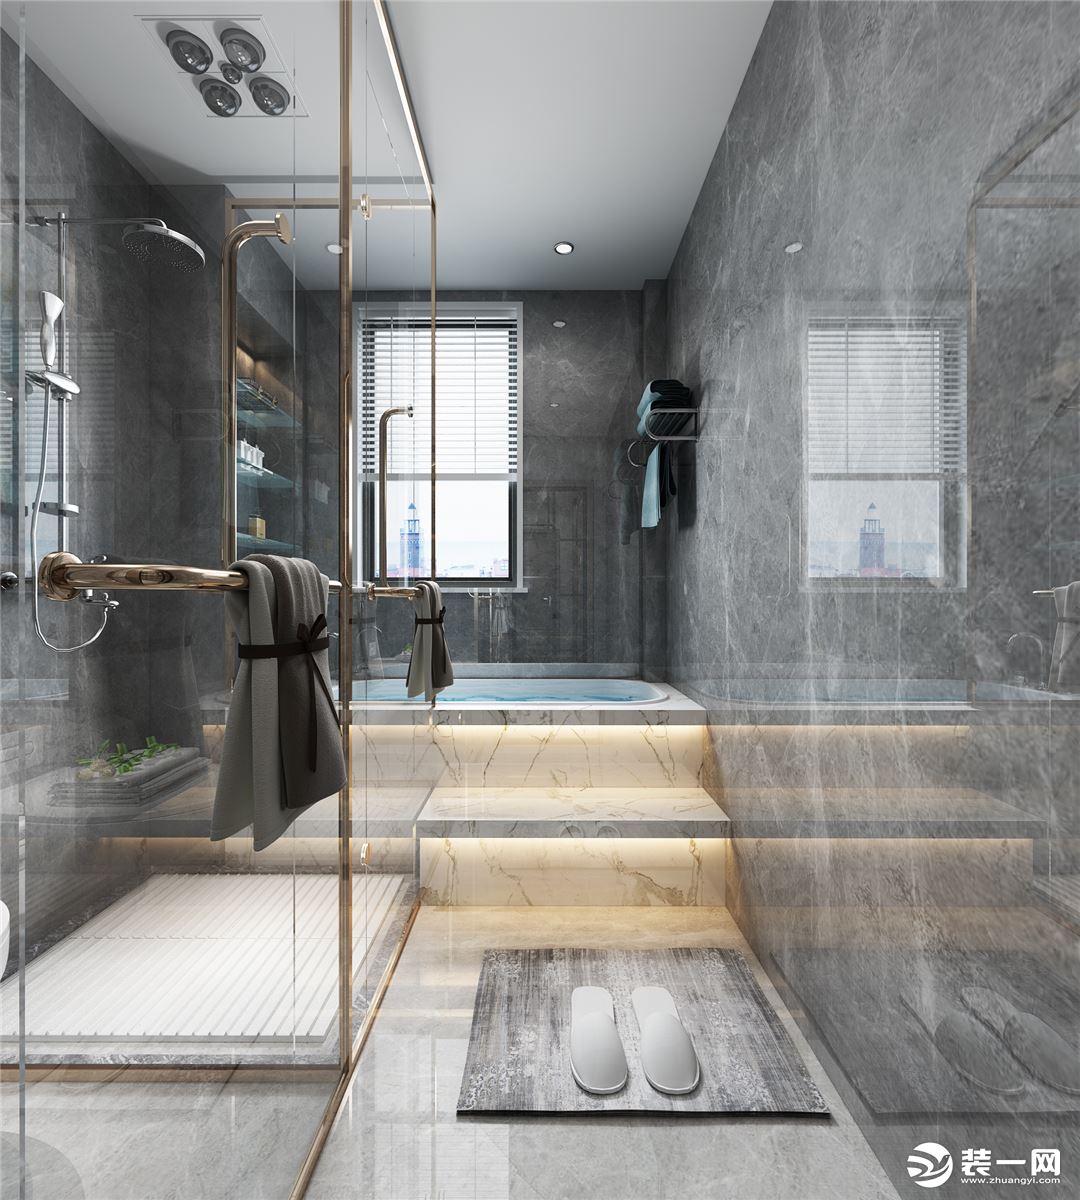 浴室墙壁覆盖着适合淋浴的混凝土层，并配有黑色花洒淋浴，豪华水龙头和一个矩形可丽耐水槽。